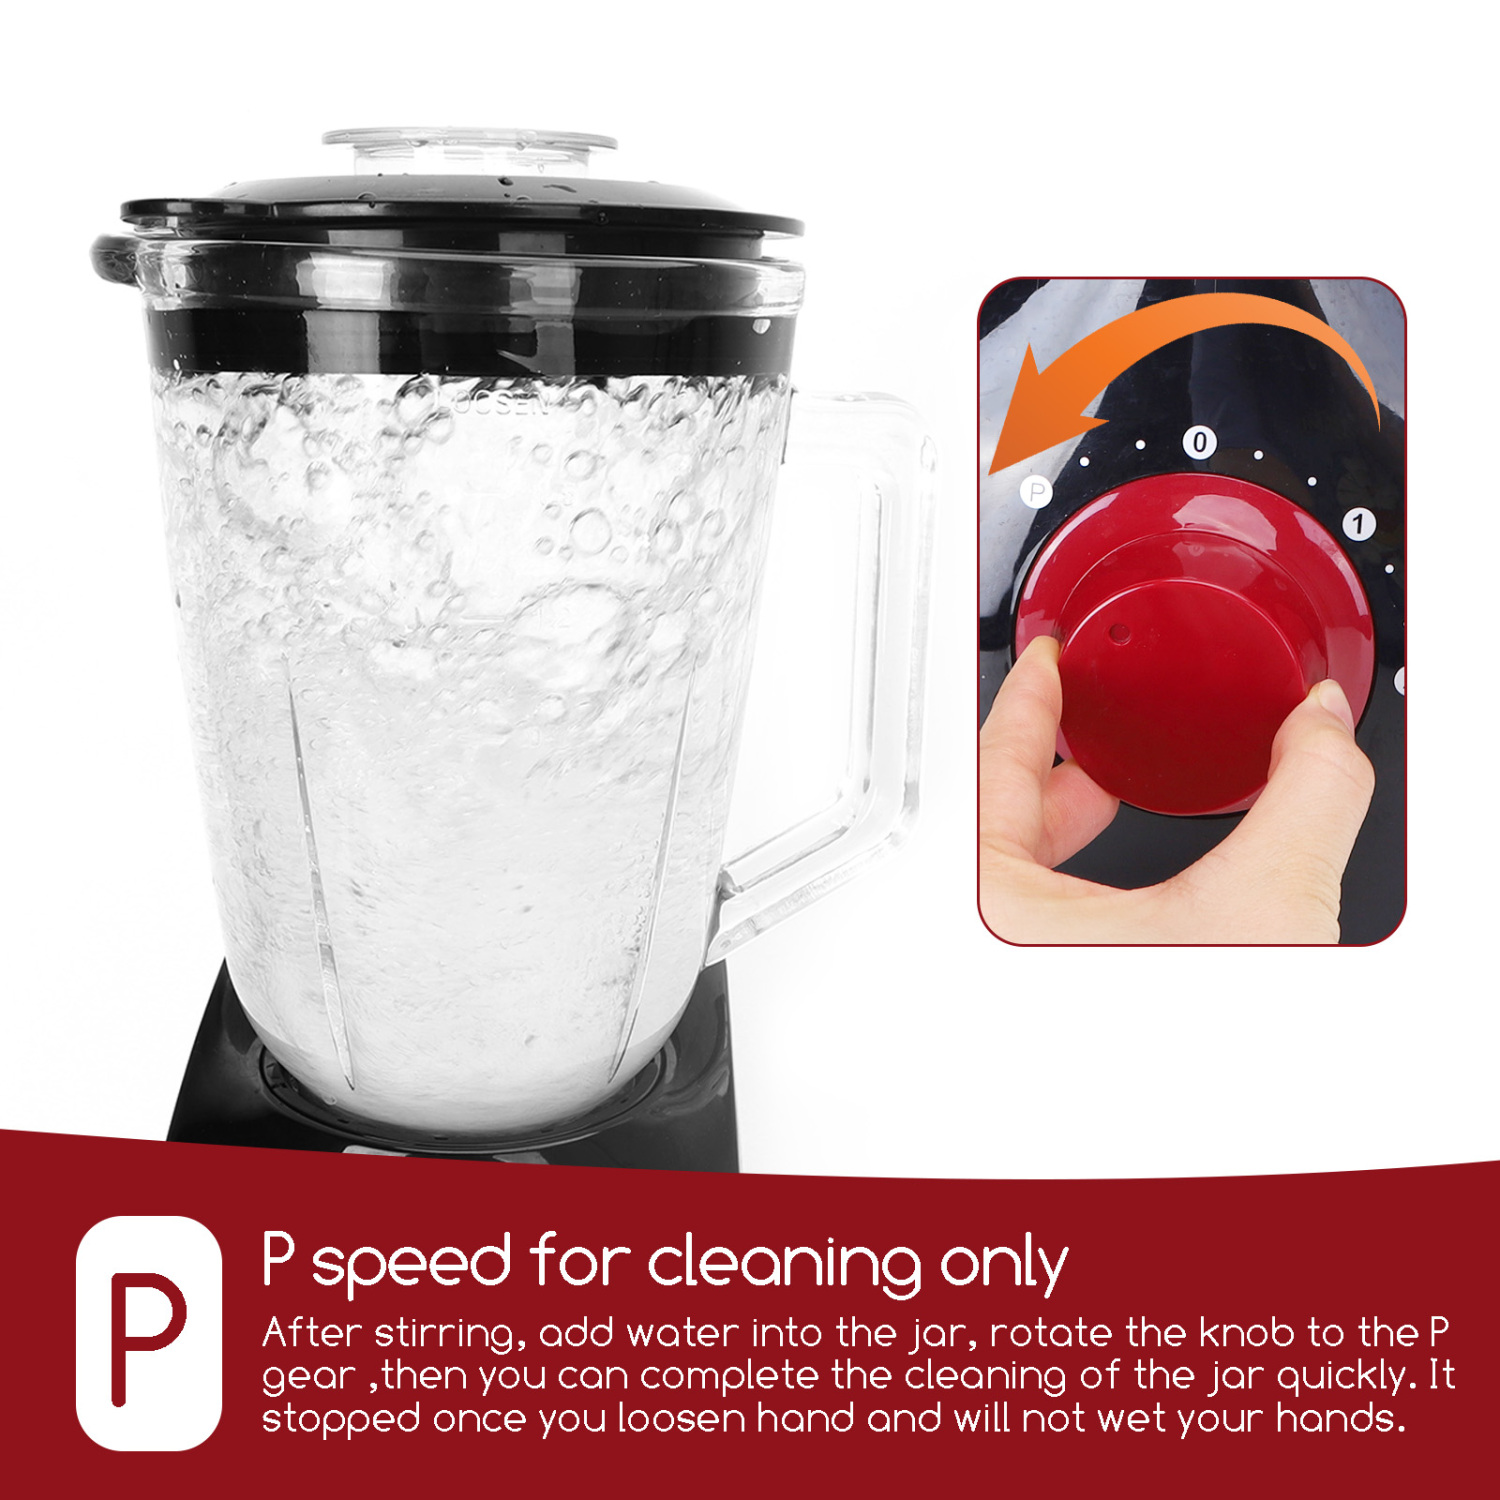 Aigostar Pomegranate 30JDF - Frullatore da tavolo multifunzione, frantoio a ghiaccio con vaso in vetro da 1,5 litri, 2 velocità e 4 lame in acciaio inox 750W, nero e rosso, BPA Free. Design esclusivo.(2)